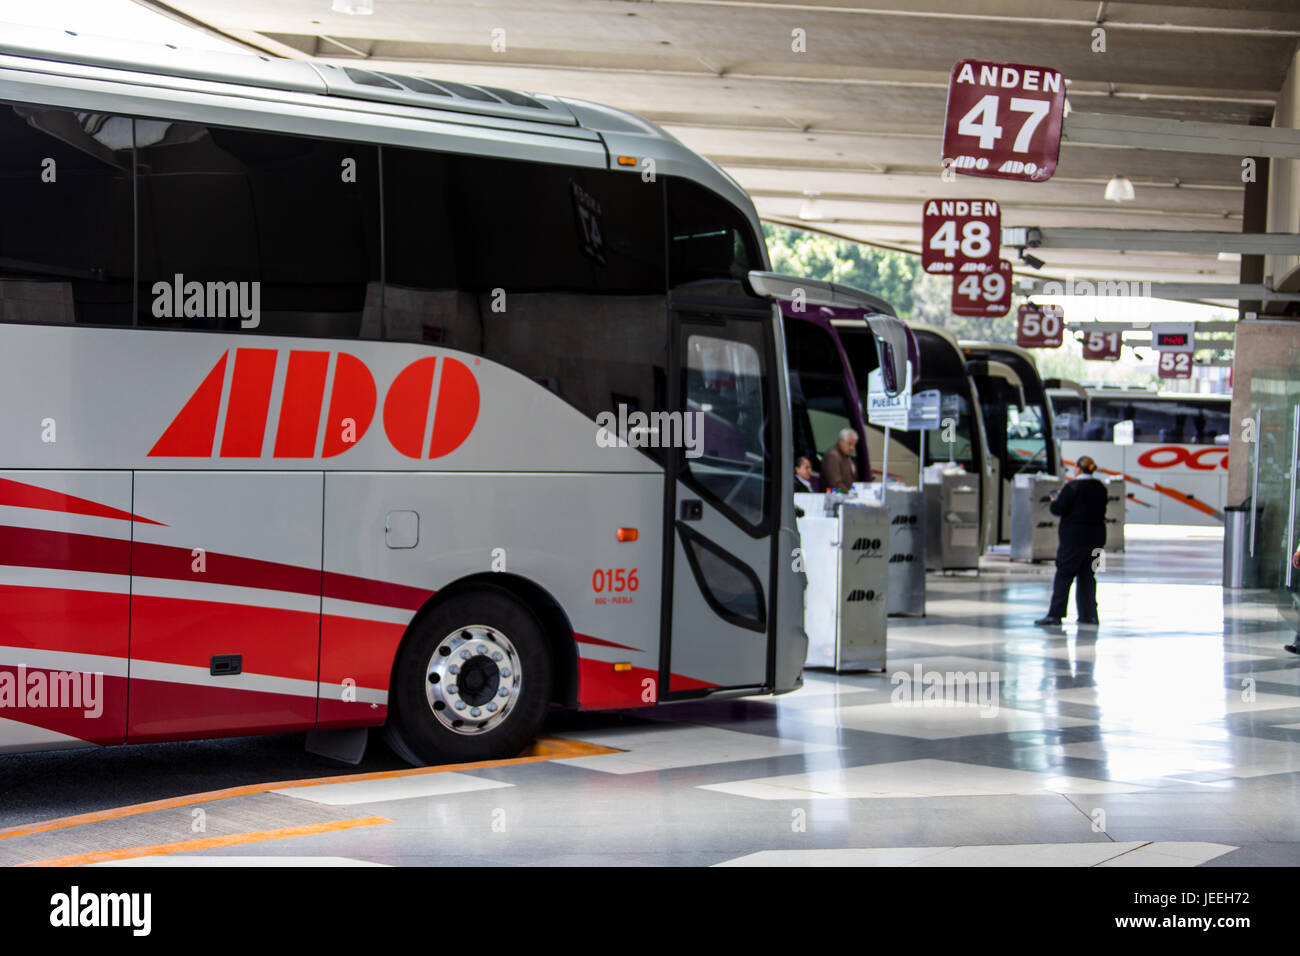 ADO bus in TAPO, Terminal de Autobuses de Pasajeros de Oriente or Eastern Passenger Bus Terminal, Mexico City, Mexico Stock Photo